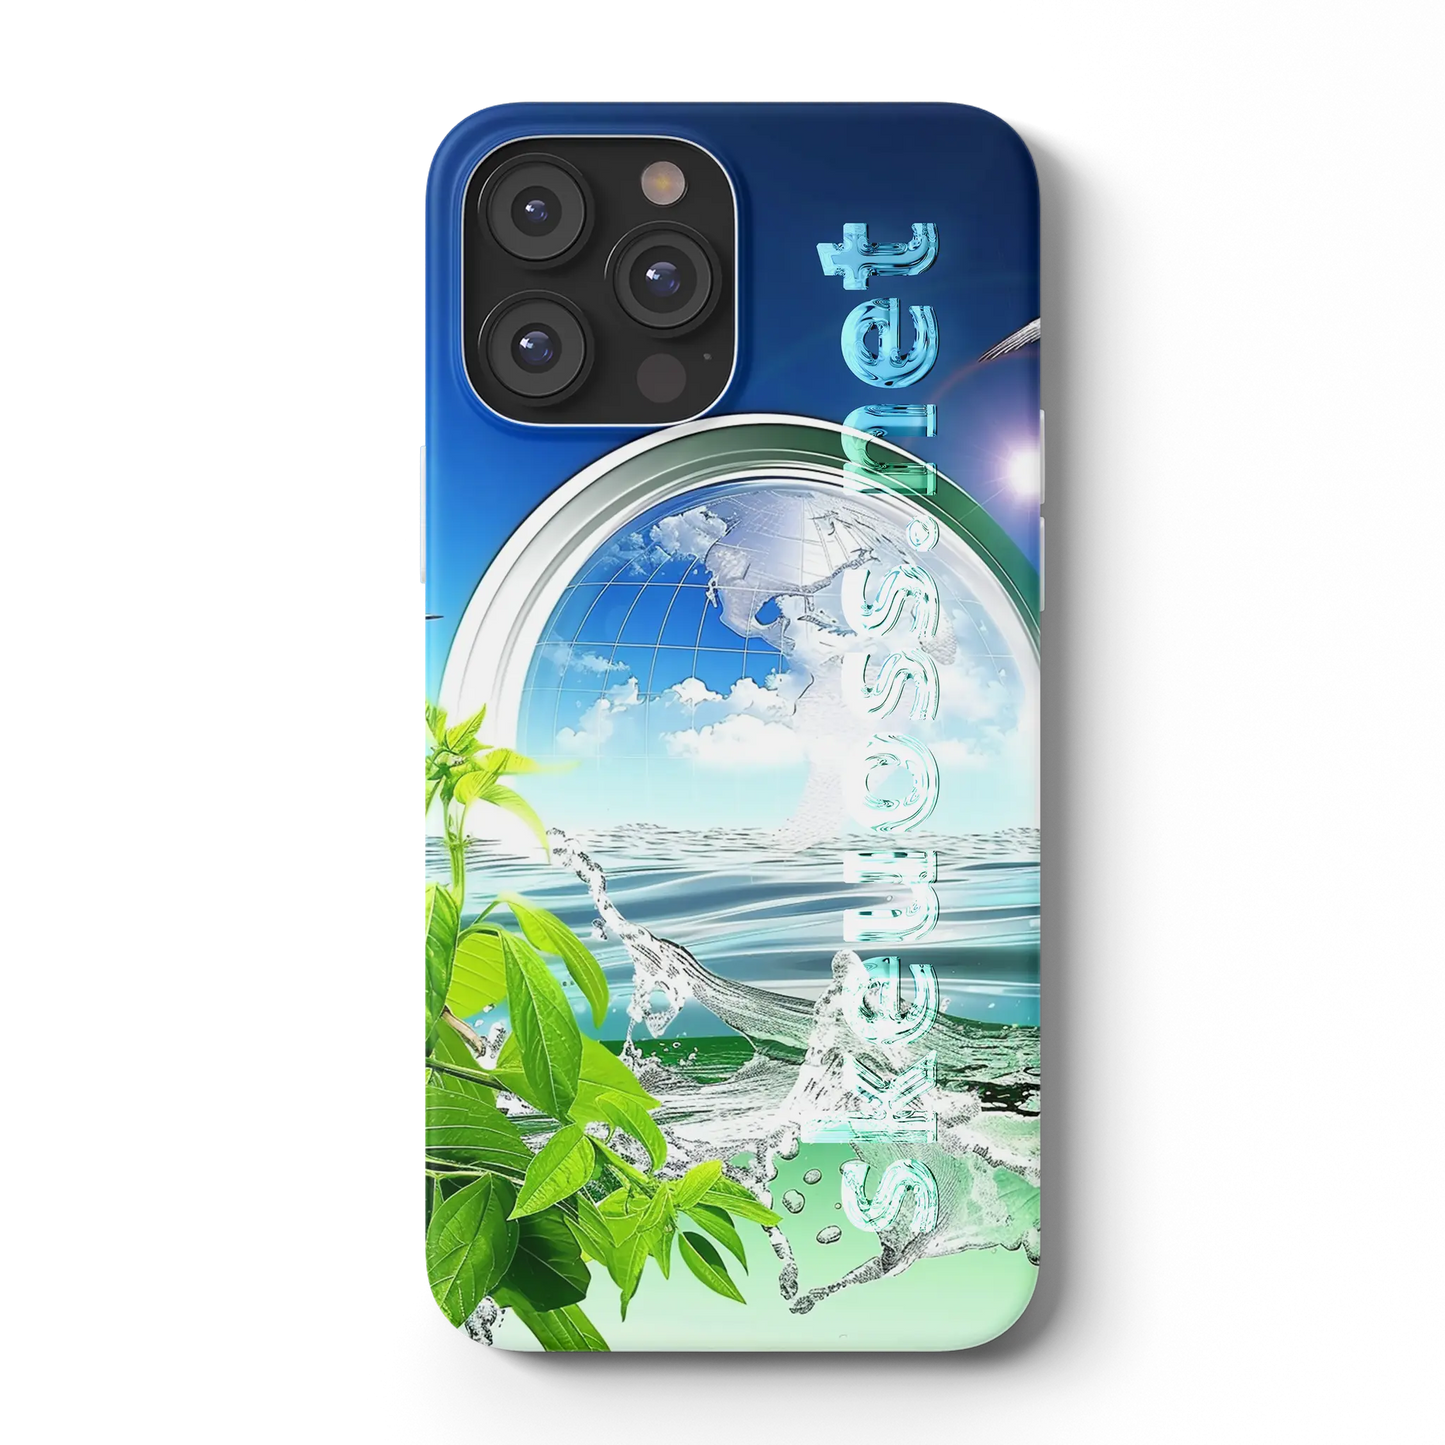 Frutiger Aero iPhone case - Design 438